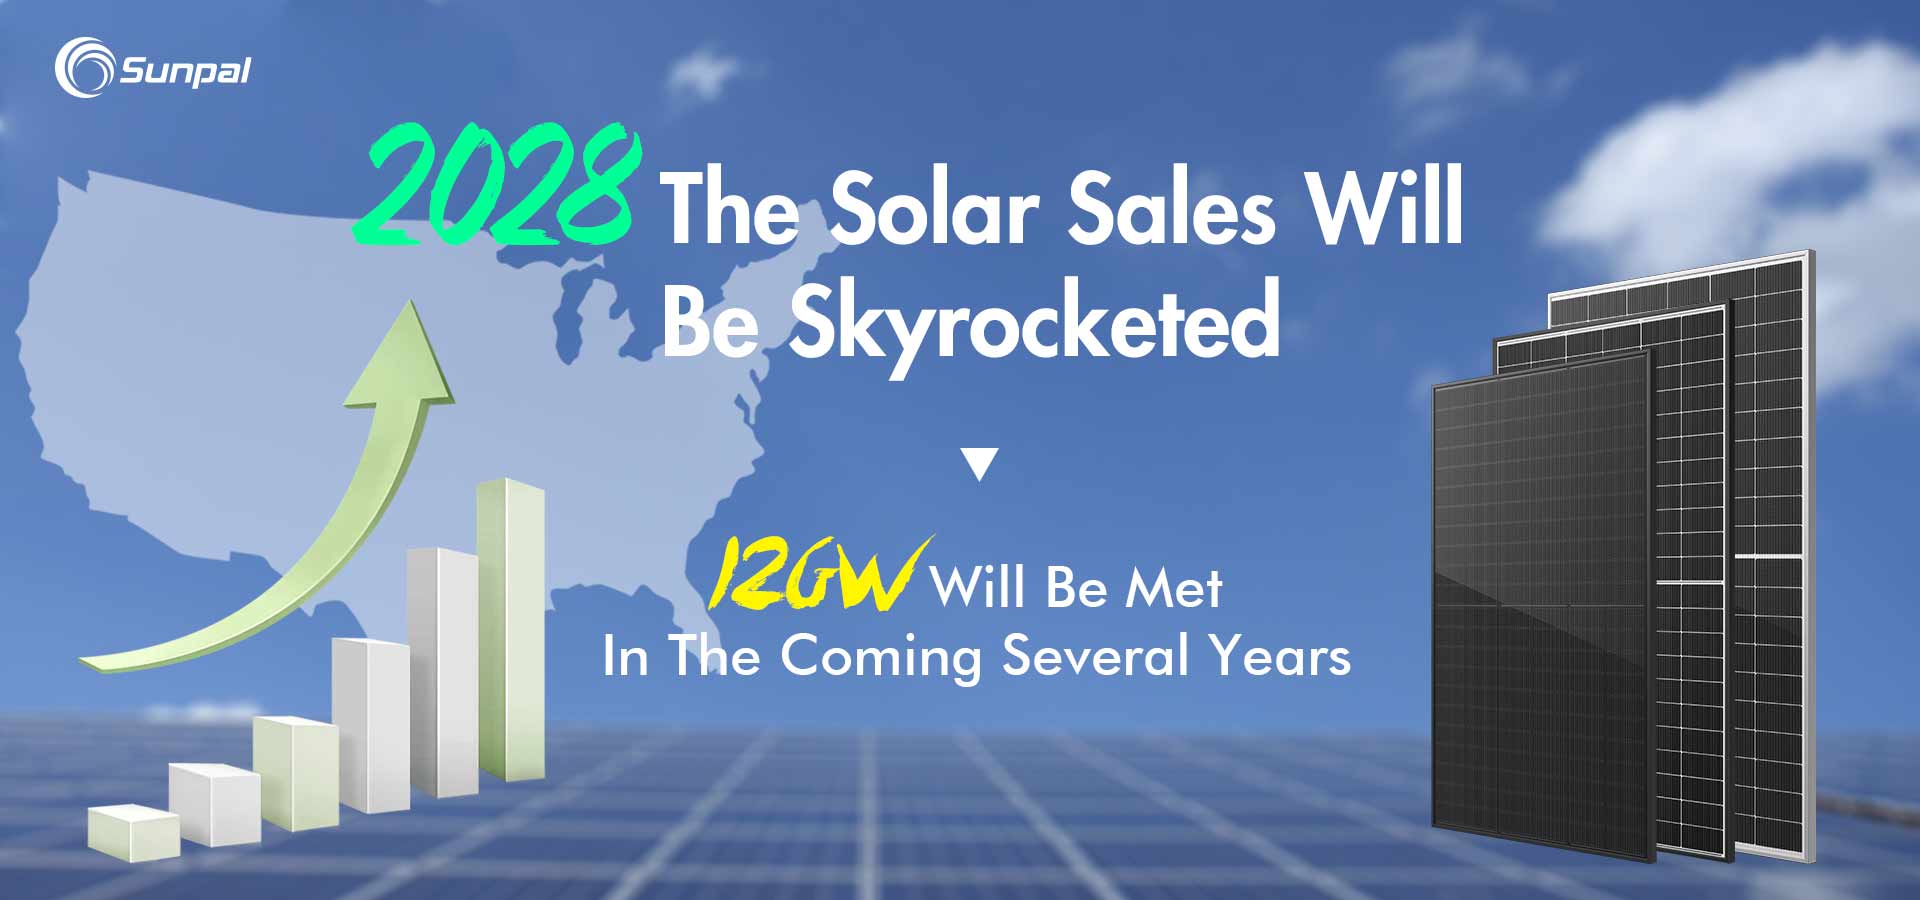 Kommersielt solcellesalg eksploderer når det amerikanske markedet når 14 GW innen 2028